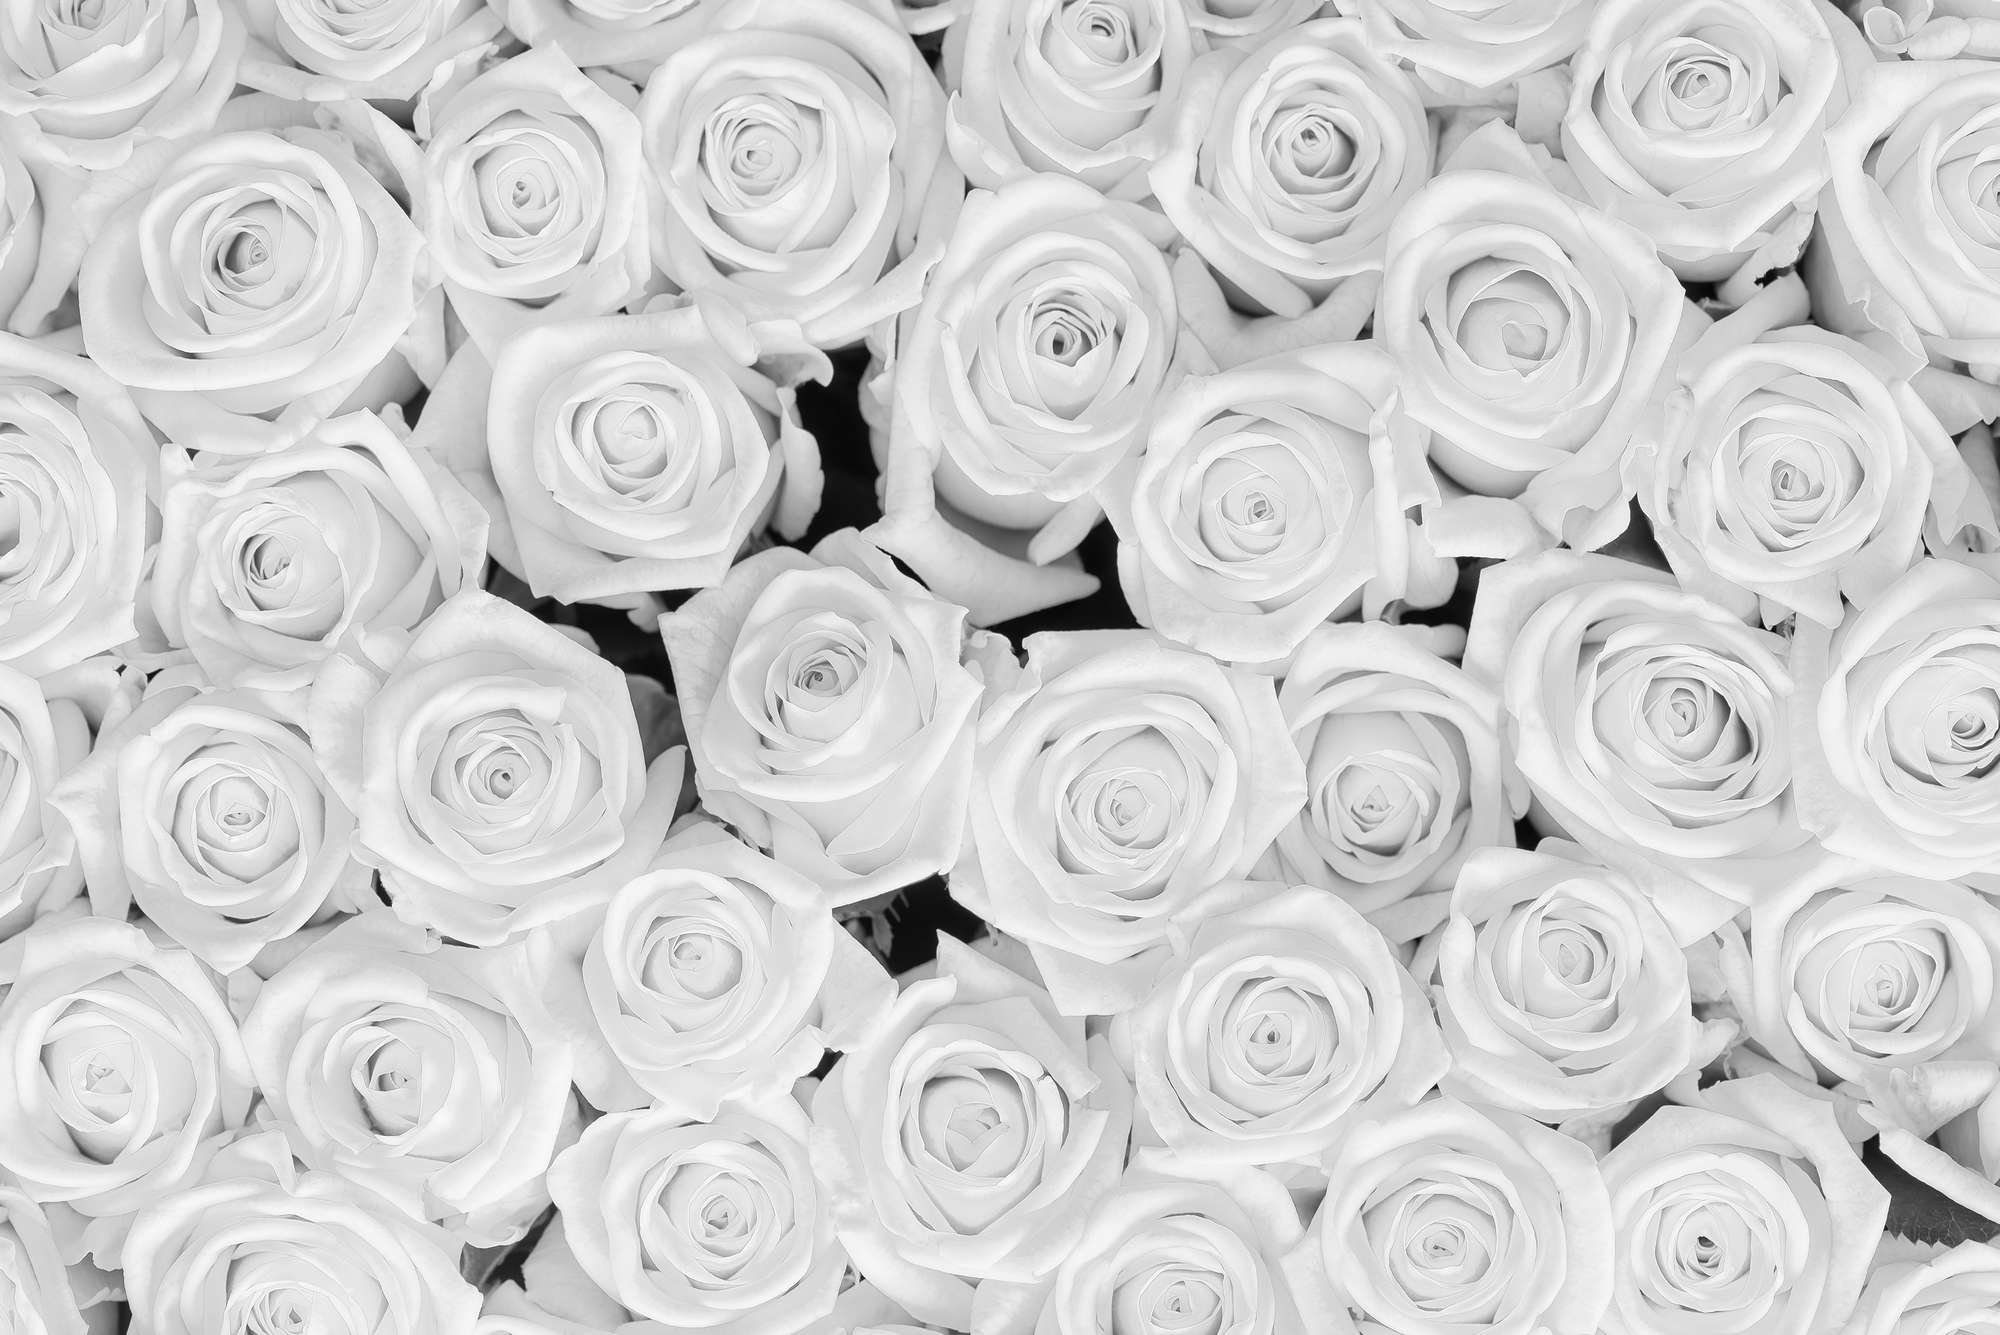             Plantas Papel pintado Rosas blancas sobre nácar liso
        